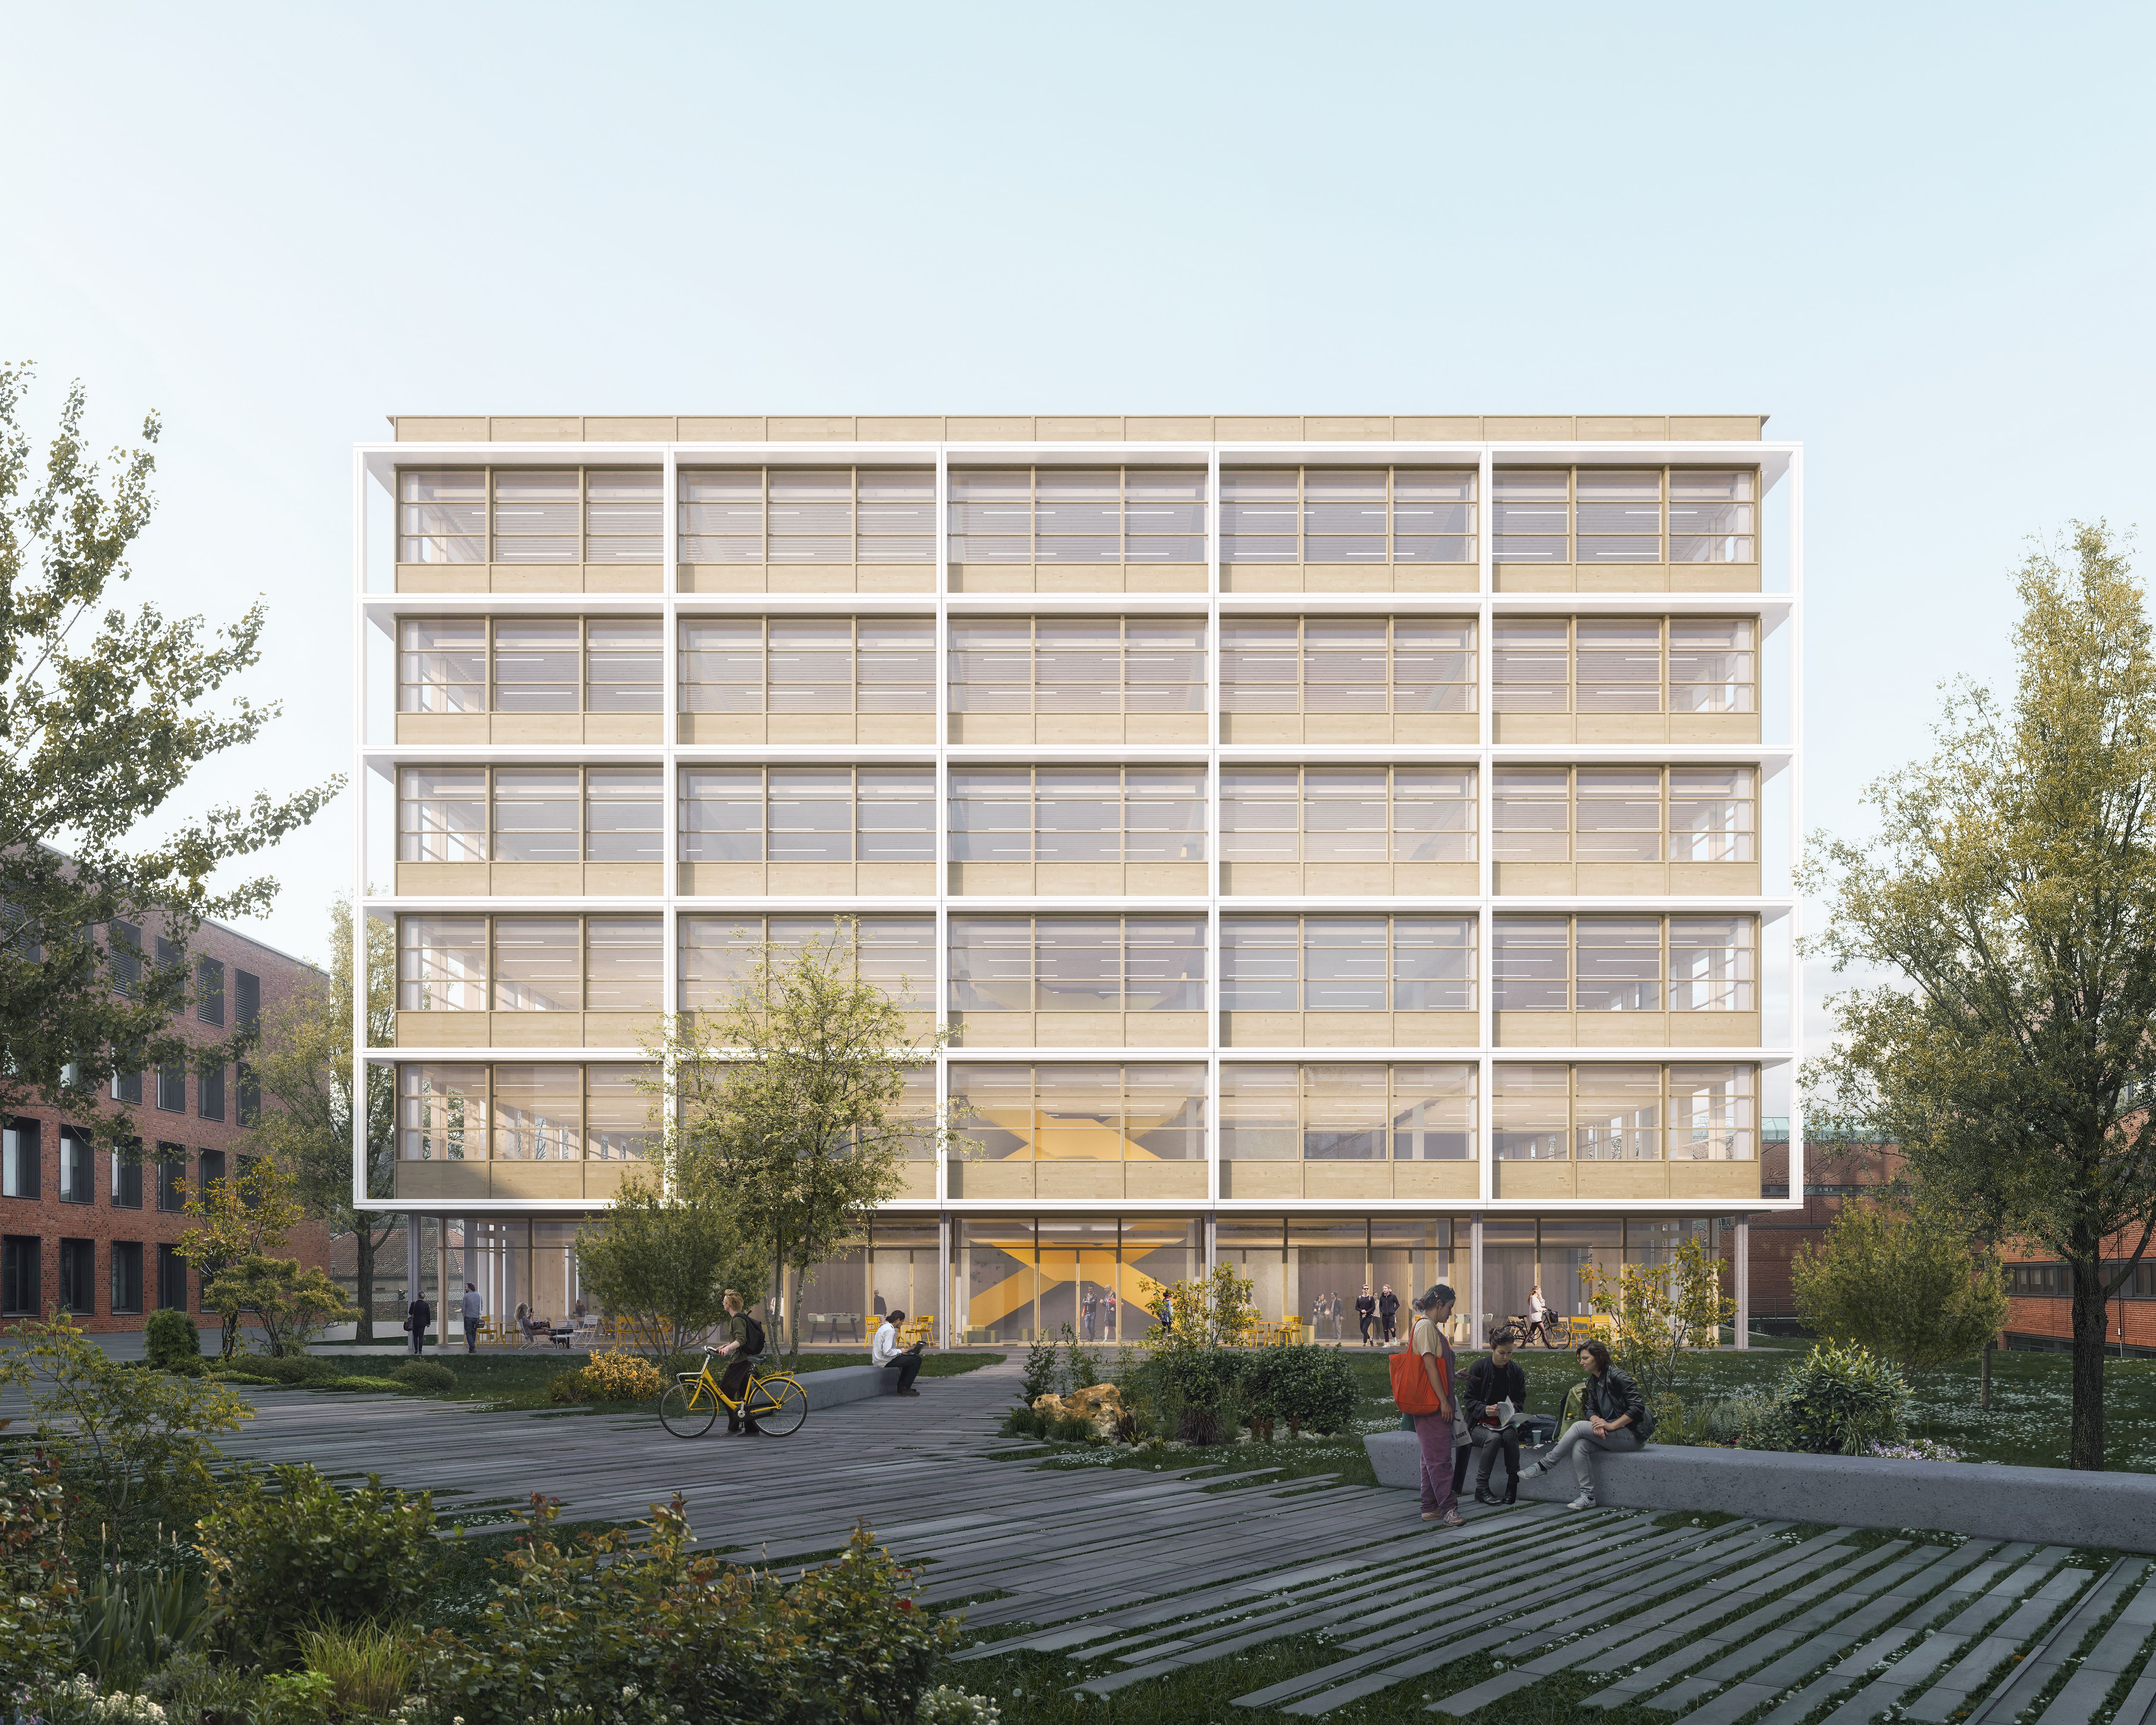 Das neue Laborgebäude für das Robert-Koch-Institut in Berlin soll den Grünraum wahren